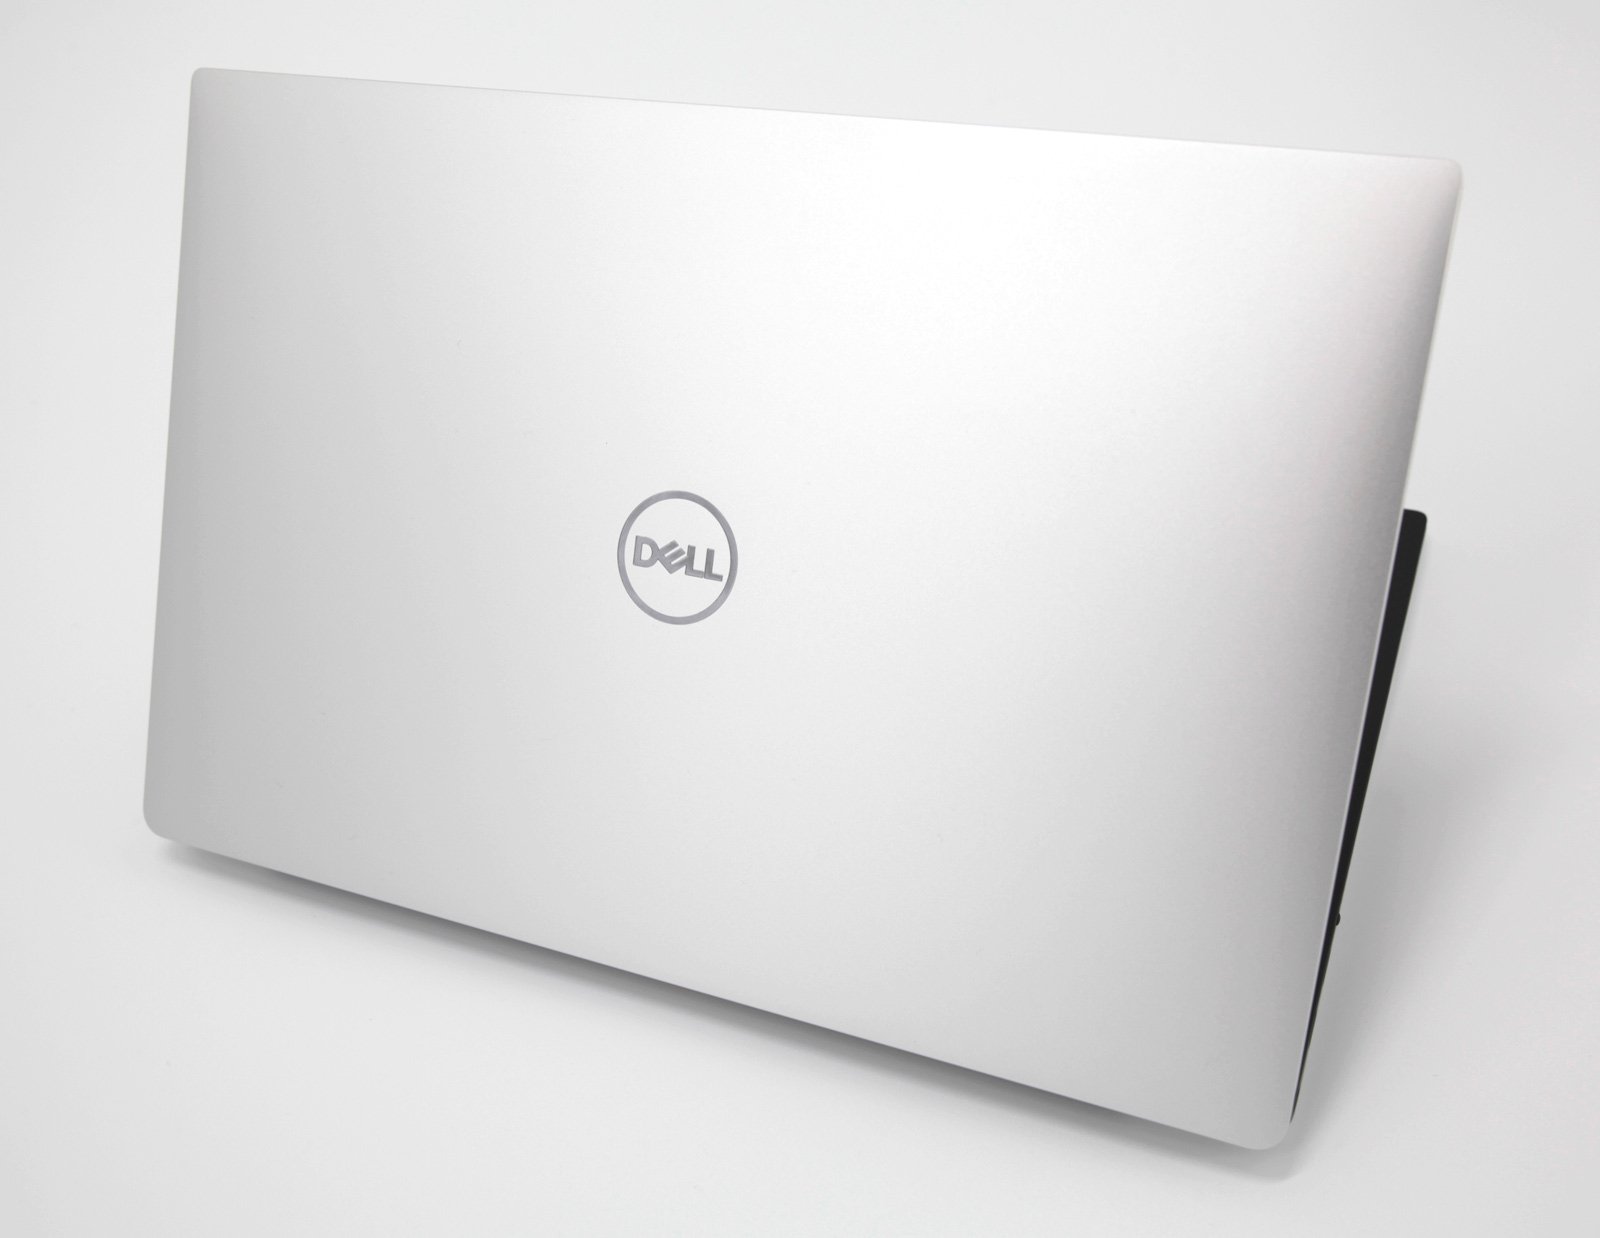 Dell XPS 13 7390 4K Touch Screen Laptop: Core i7-10510U, 512GB, 16GB RAM - CruiseTech